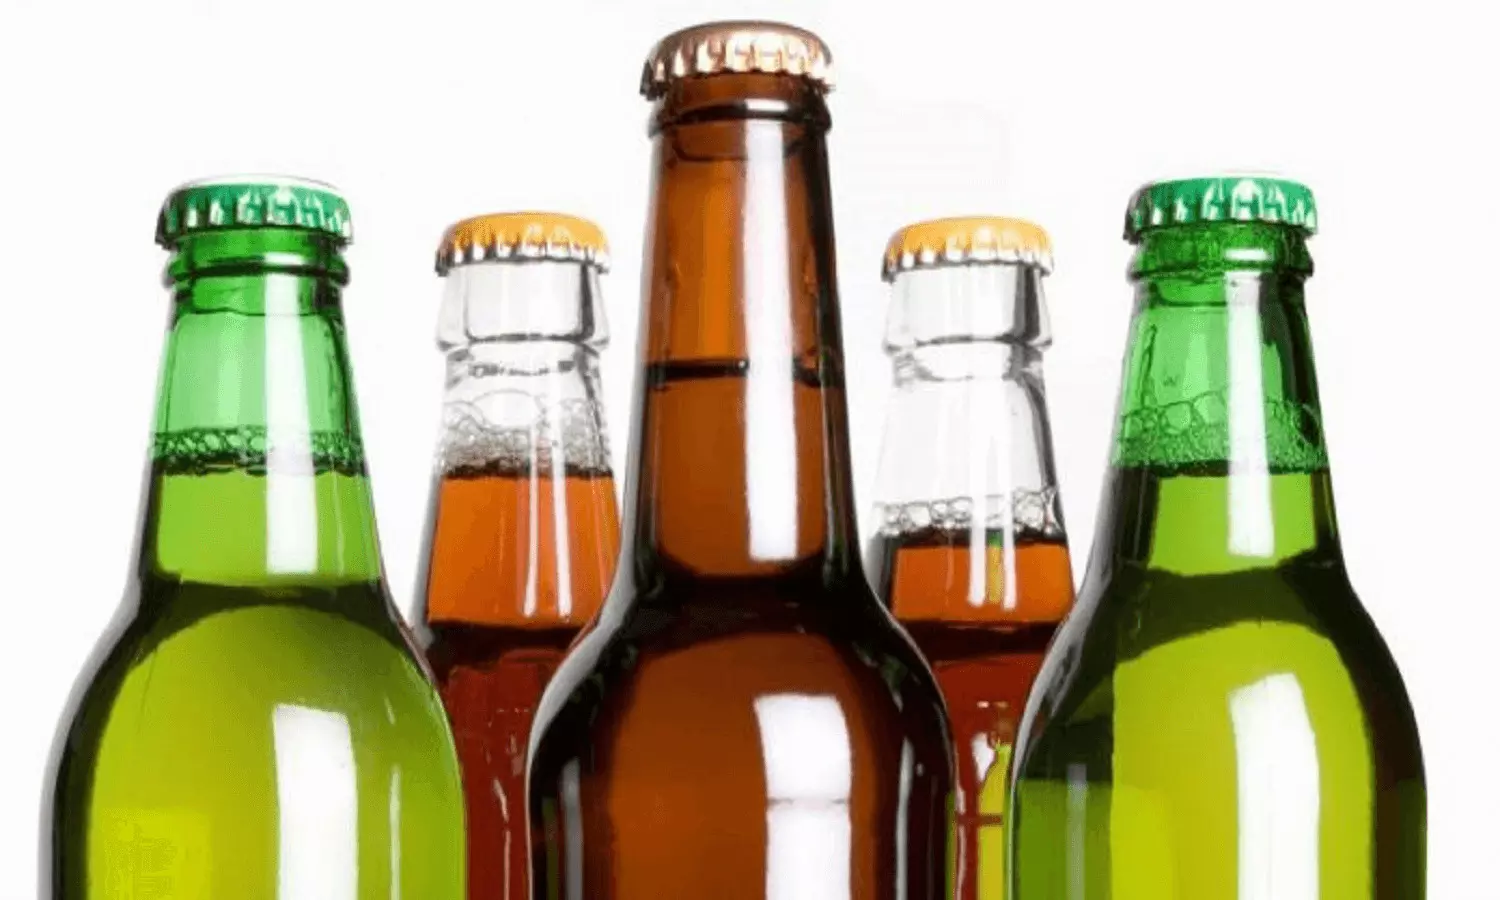 Interesting Facts: बियर की बोतल का रंग हरा और भूरा ही क्यों होता है, जानिए क्या है इसके पीछे की वजह